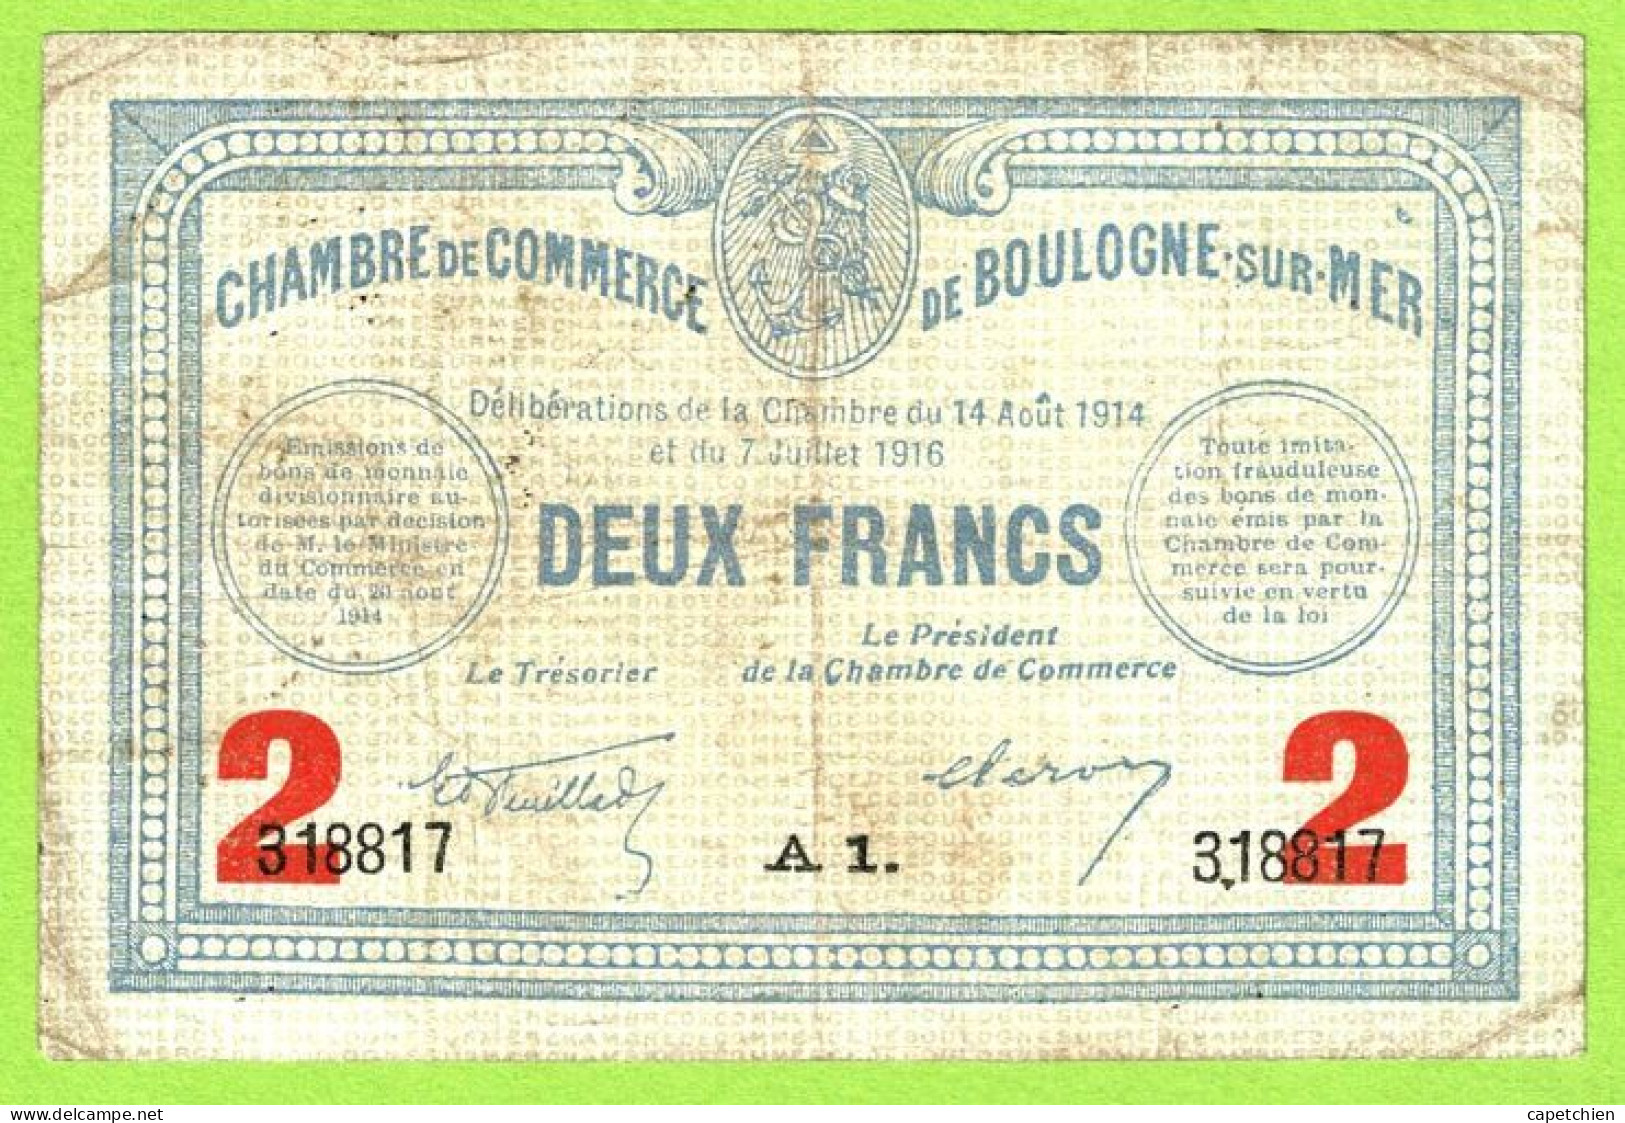 FRANCE / CHAMBRE De COMMERCE : BOULOGNE SUR MER / 2 FRANCS / 14 AOUT 1914 - 7 JUILLET 1916  / N° 318817 / SERIE A1 - Cámara De Comercio